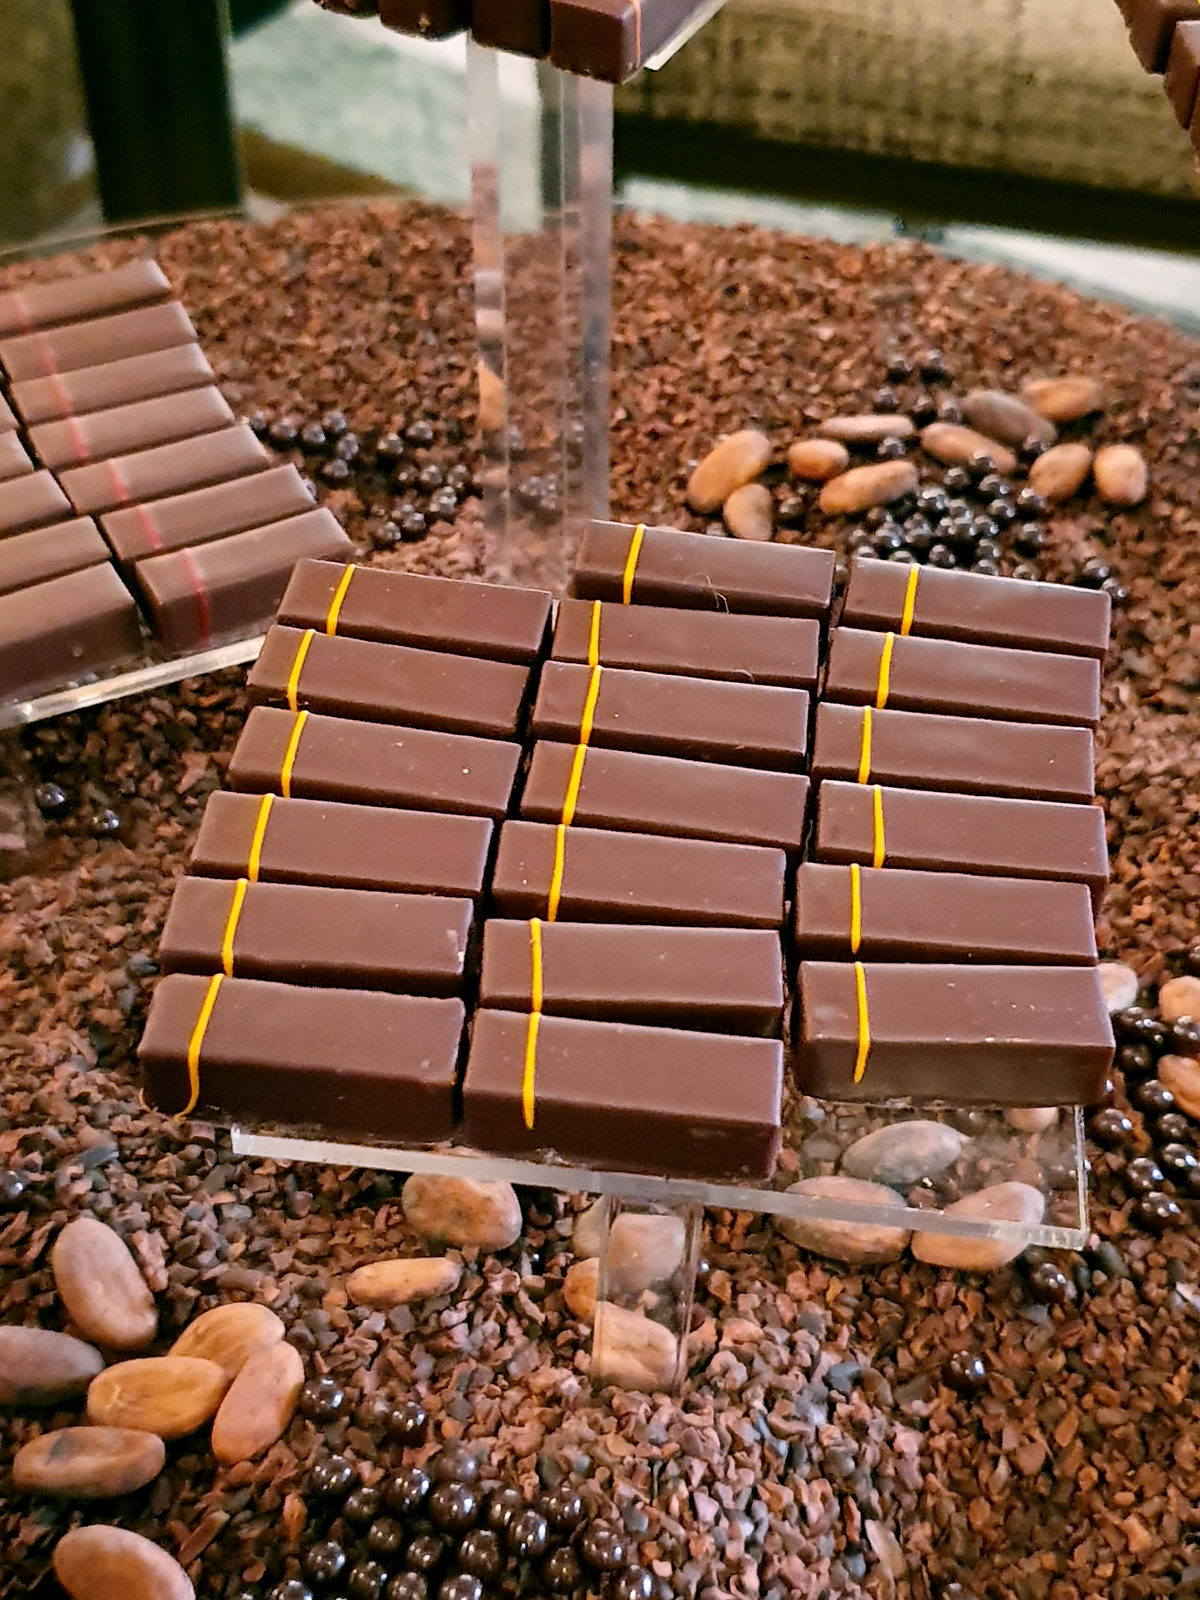 Maison du Chocolat